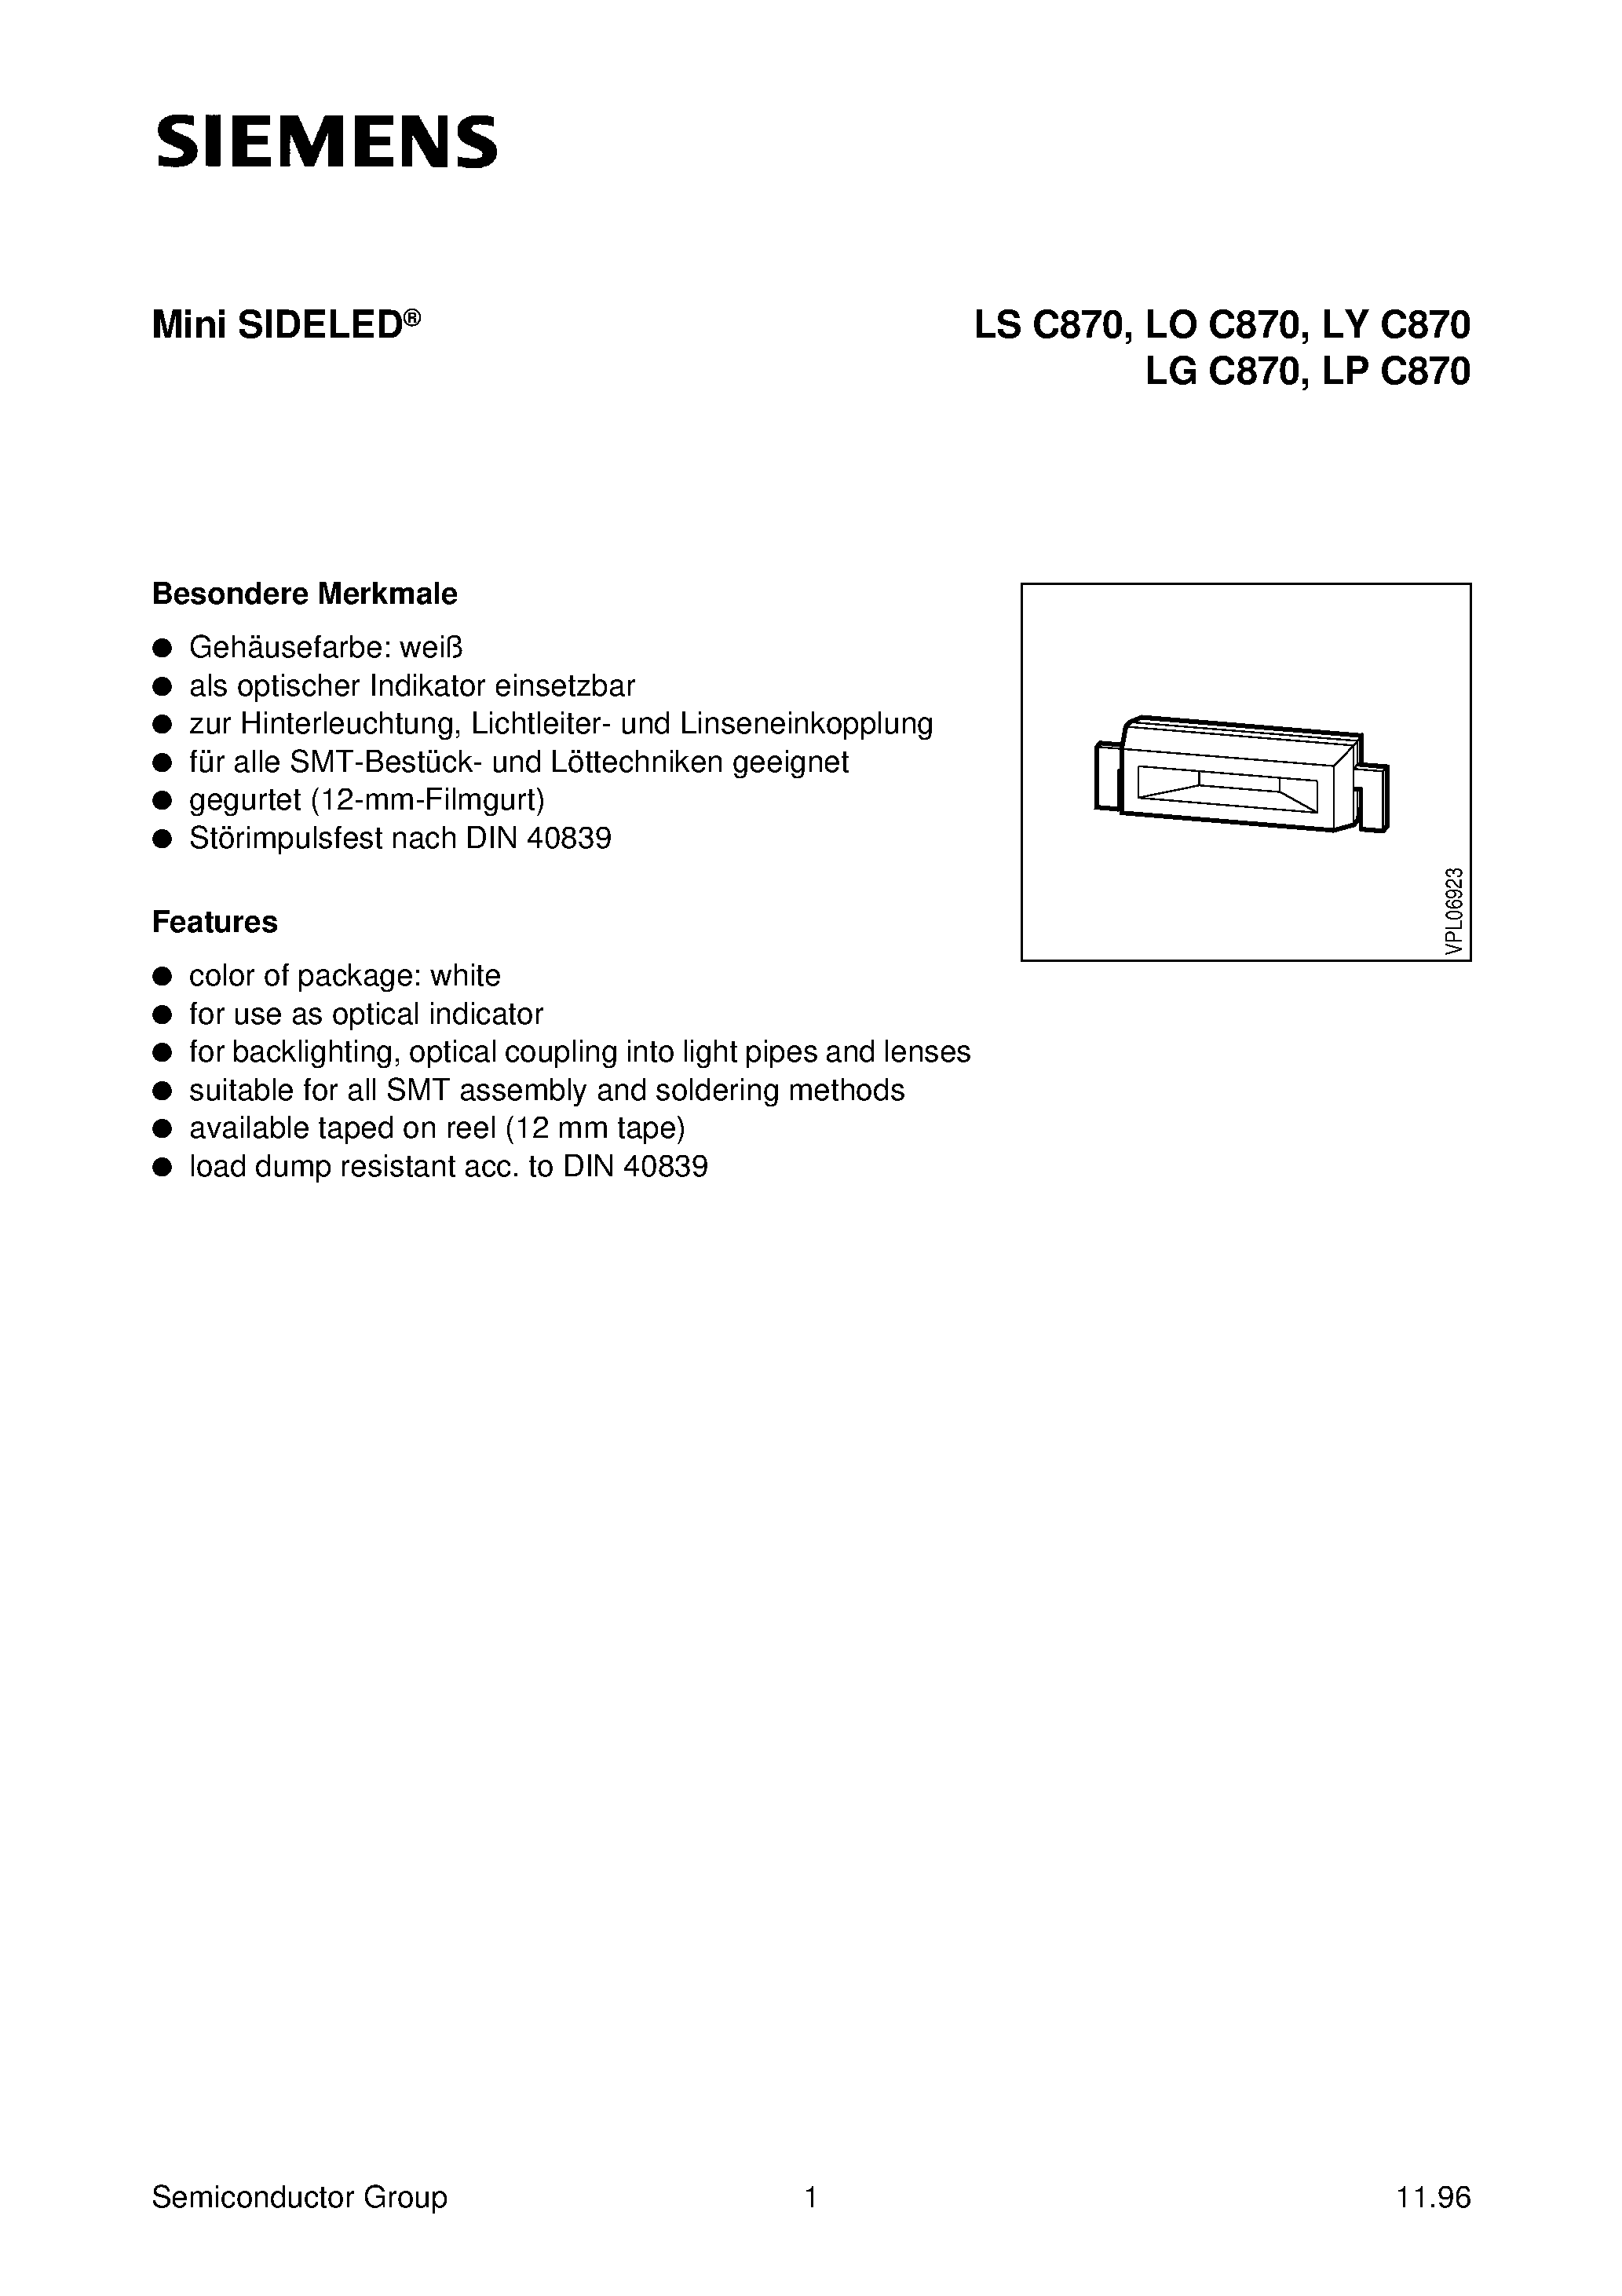 Datasheet LYC870-K - Mini SIDELED page 1